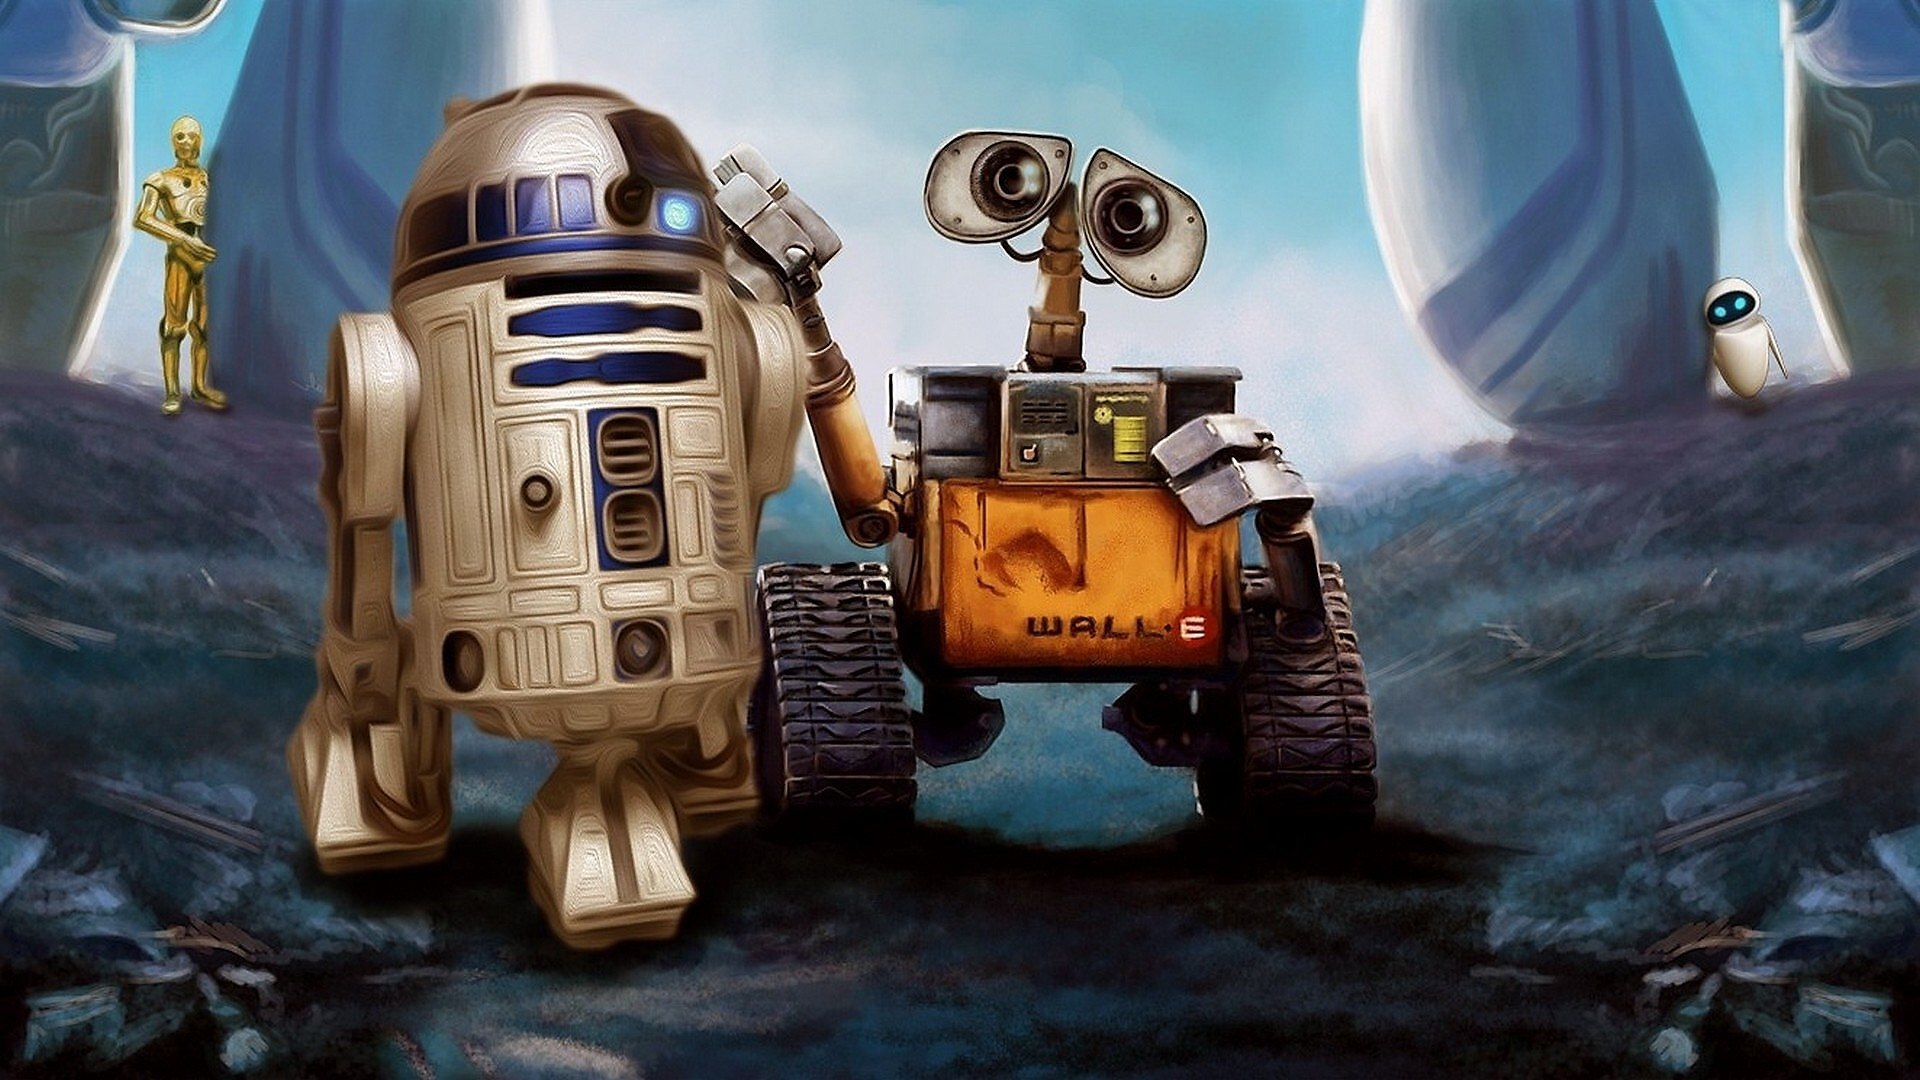 Обои Роботы R2-D2 и Wall-E.